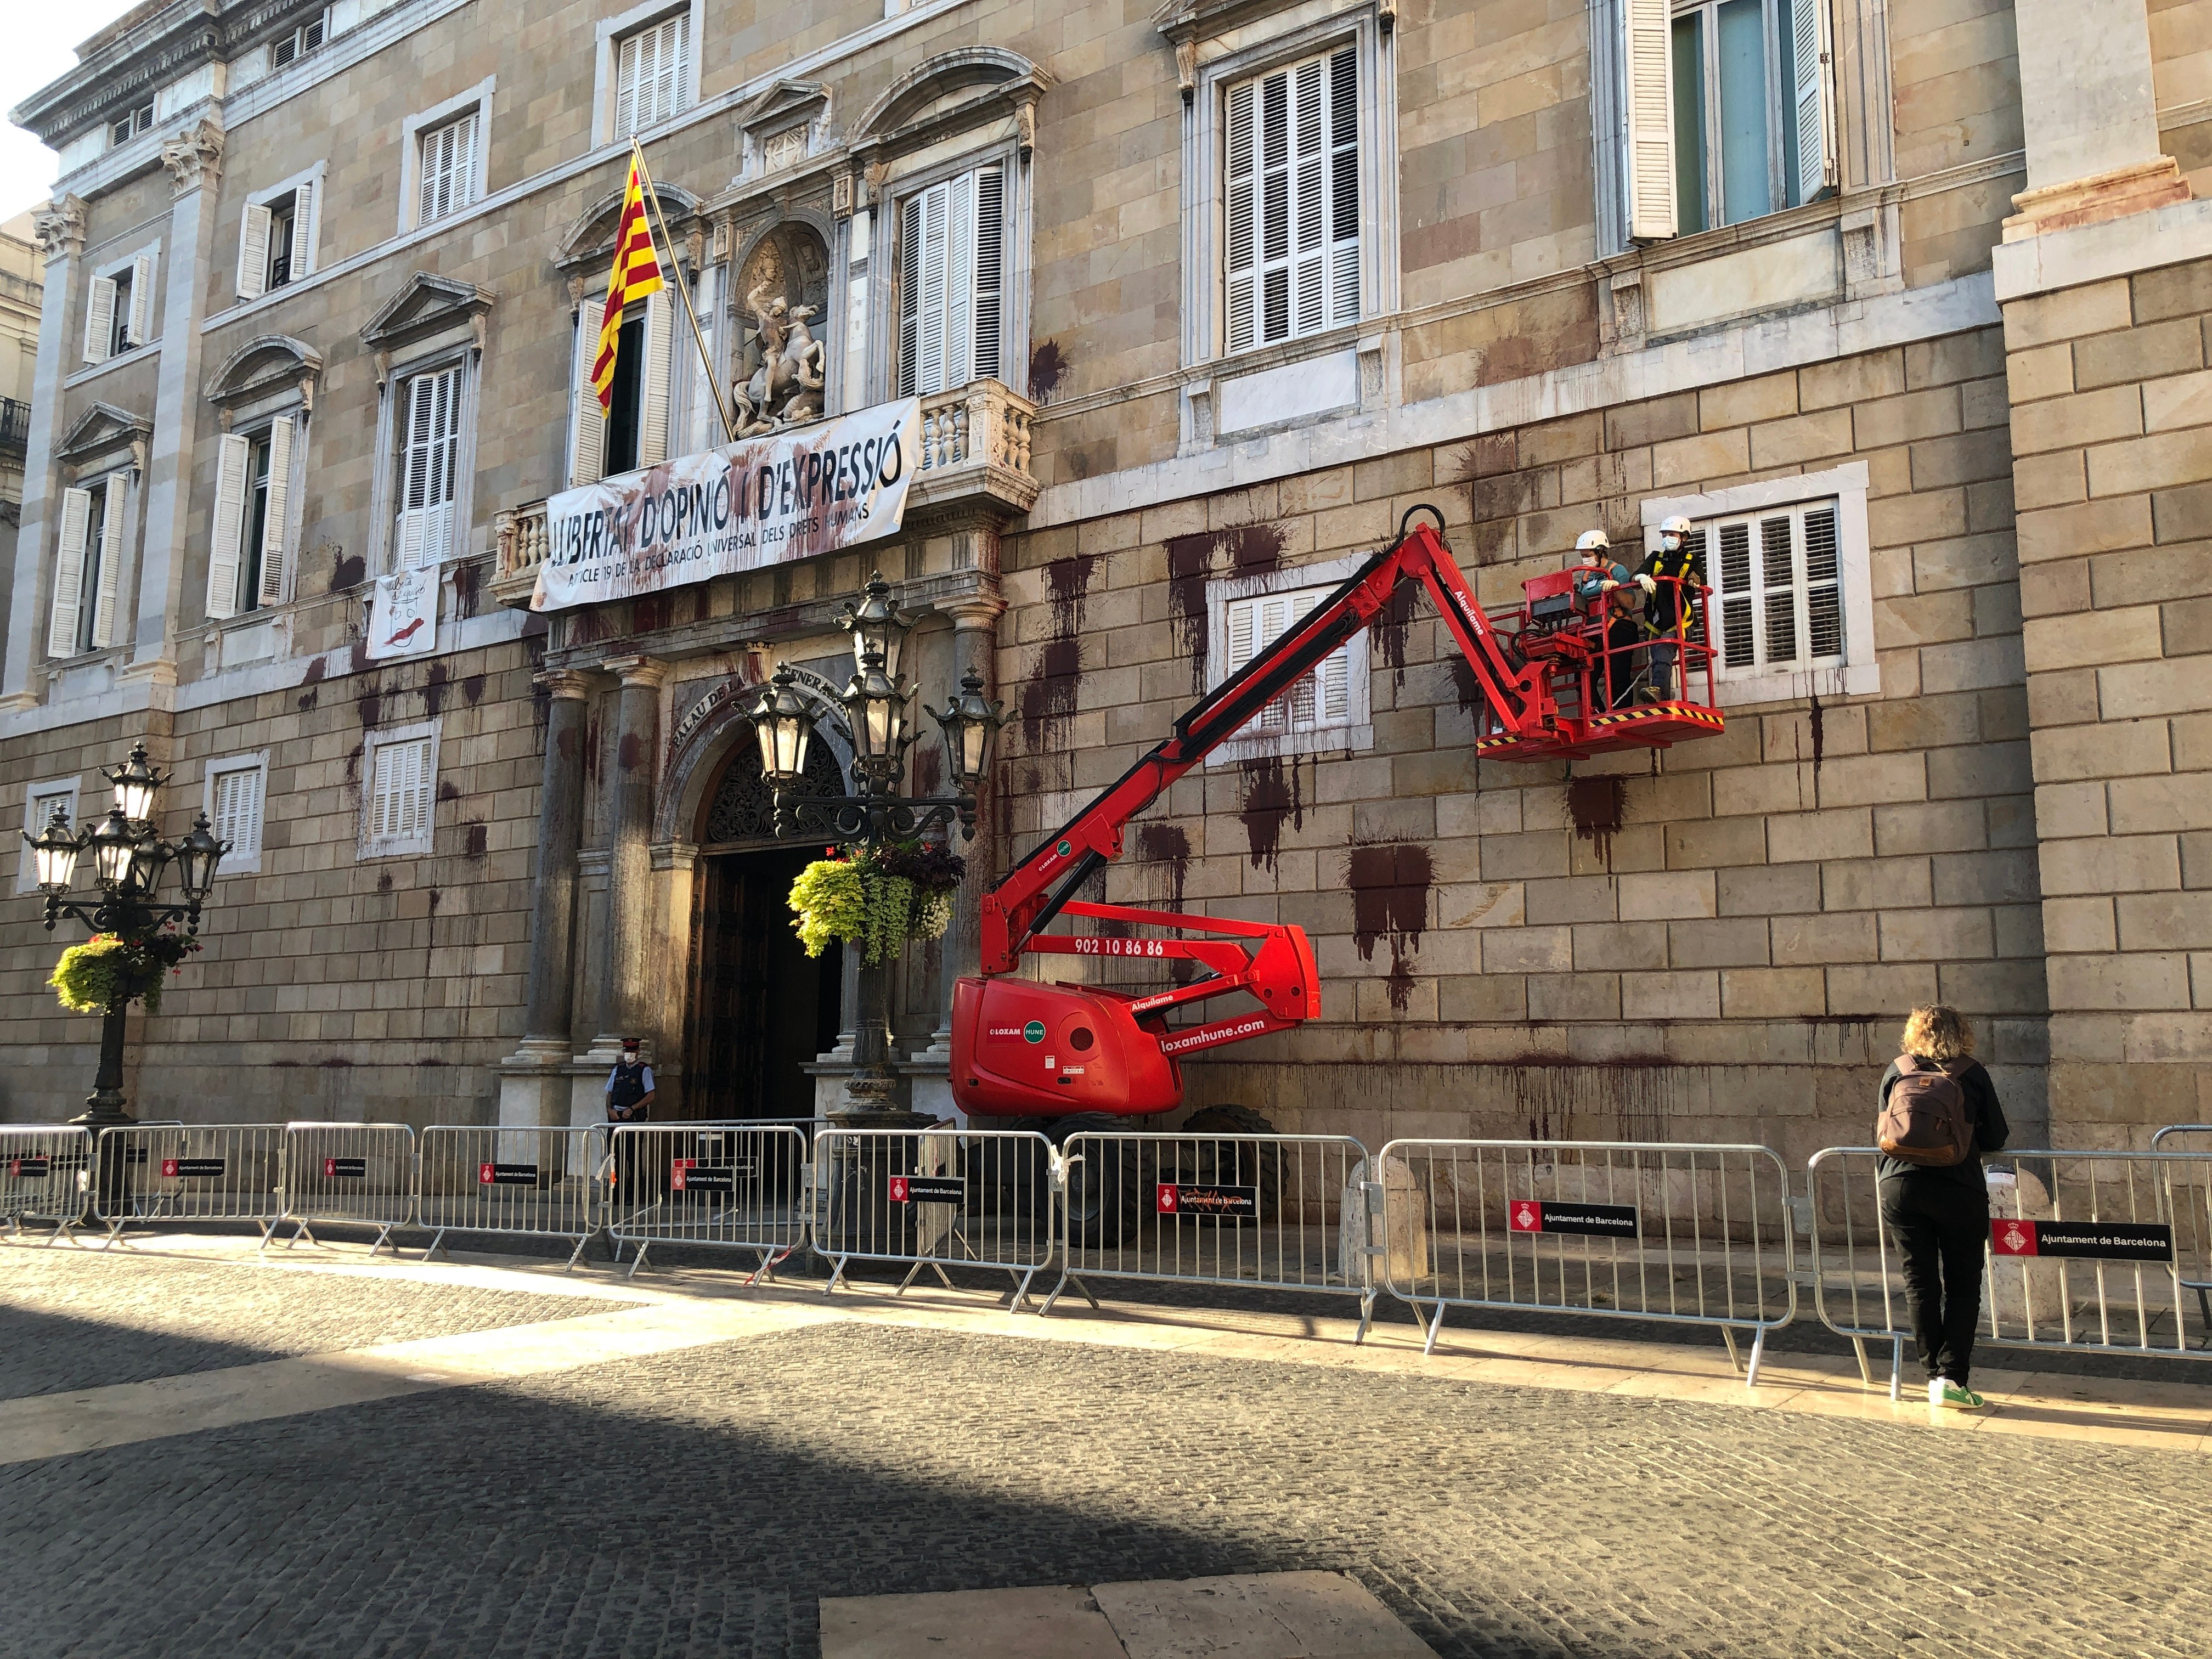 Limpiar las pintadas de la fachada de la Generalitat costará 10.000 euros